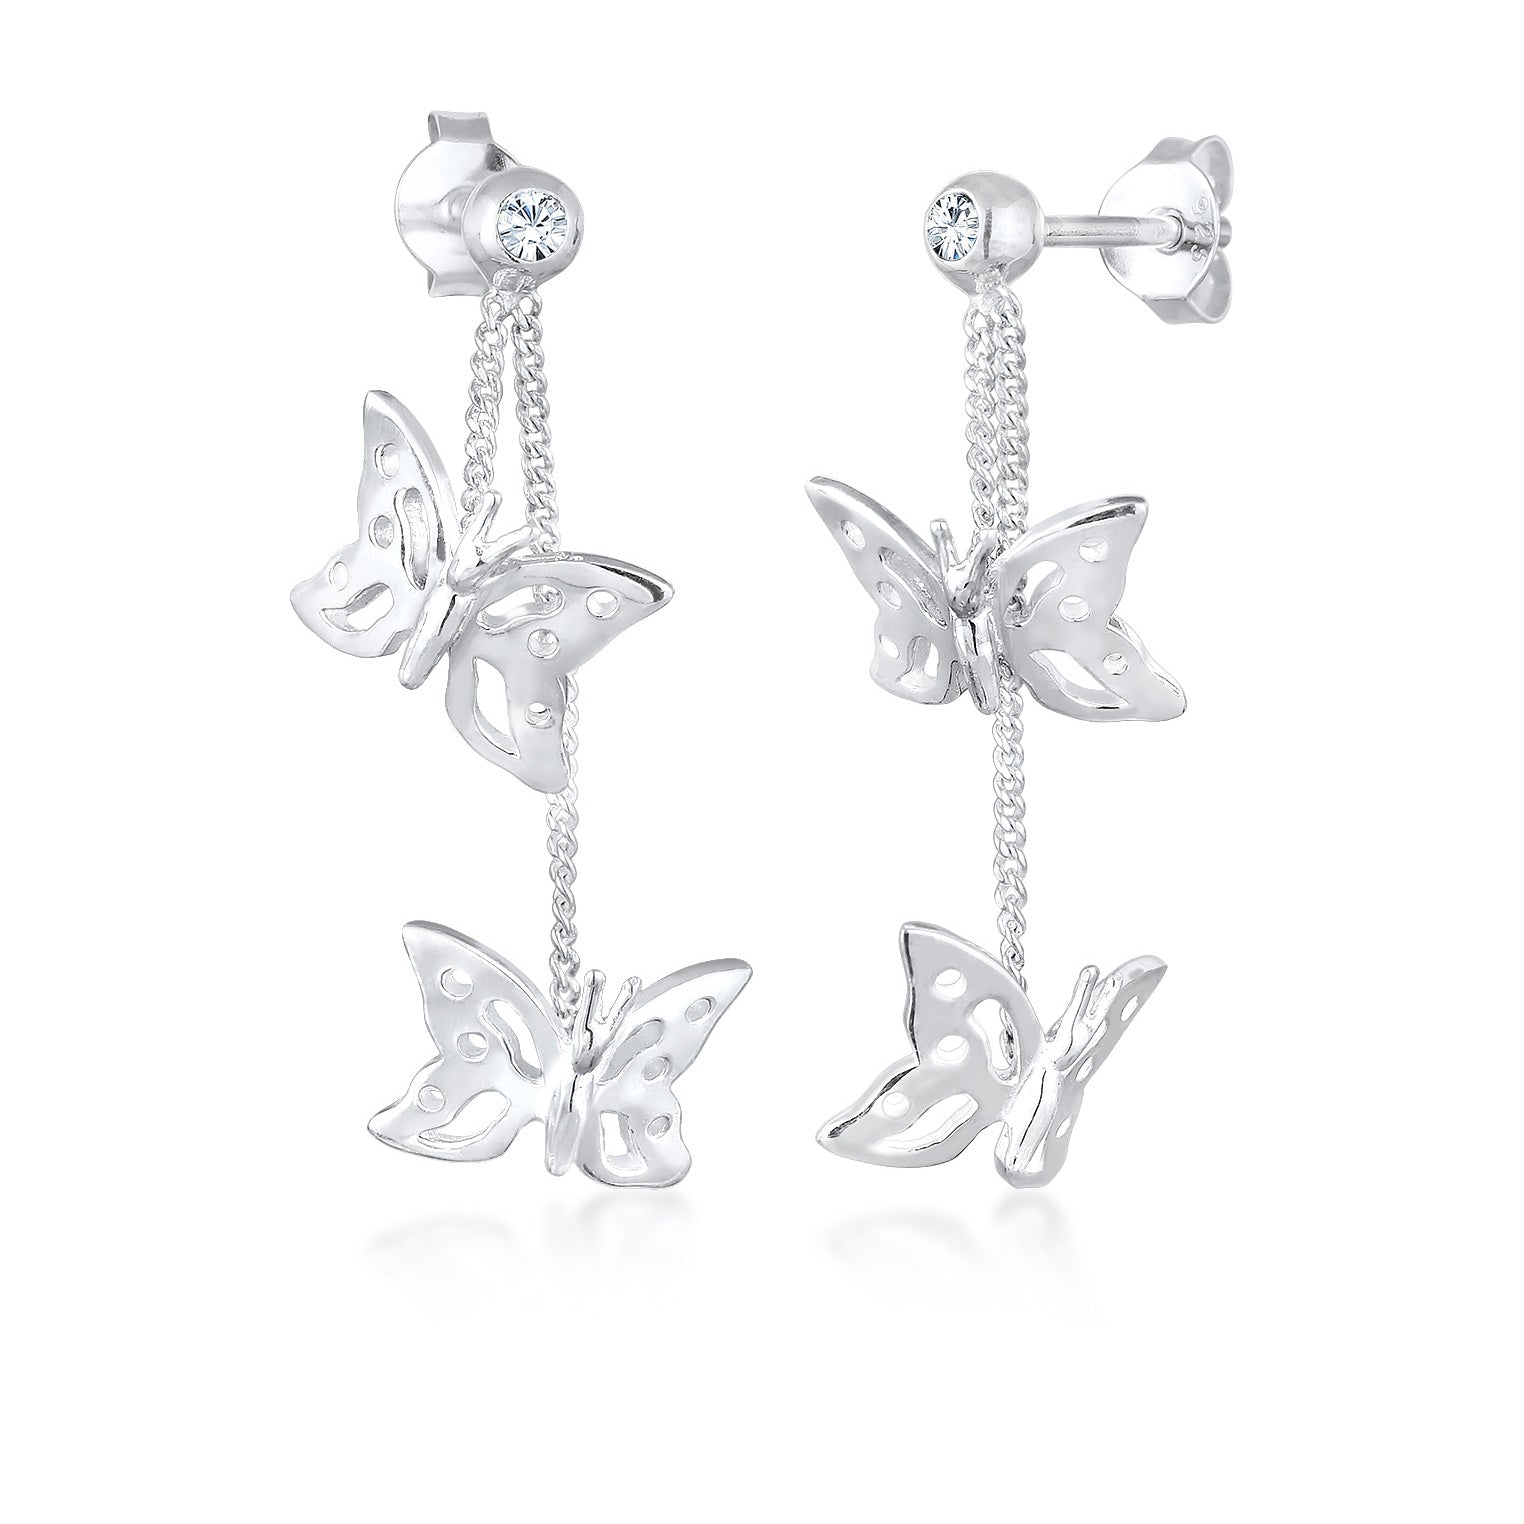 Halskette Schmetterling Anhänger | Kristall (Weiß) | 925er Sterling Silber